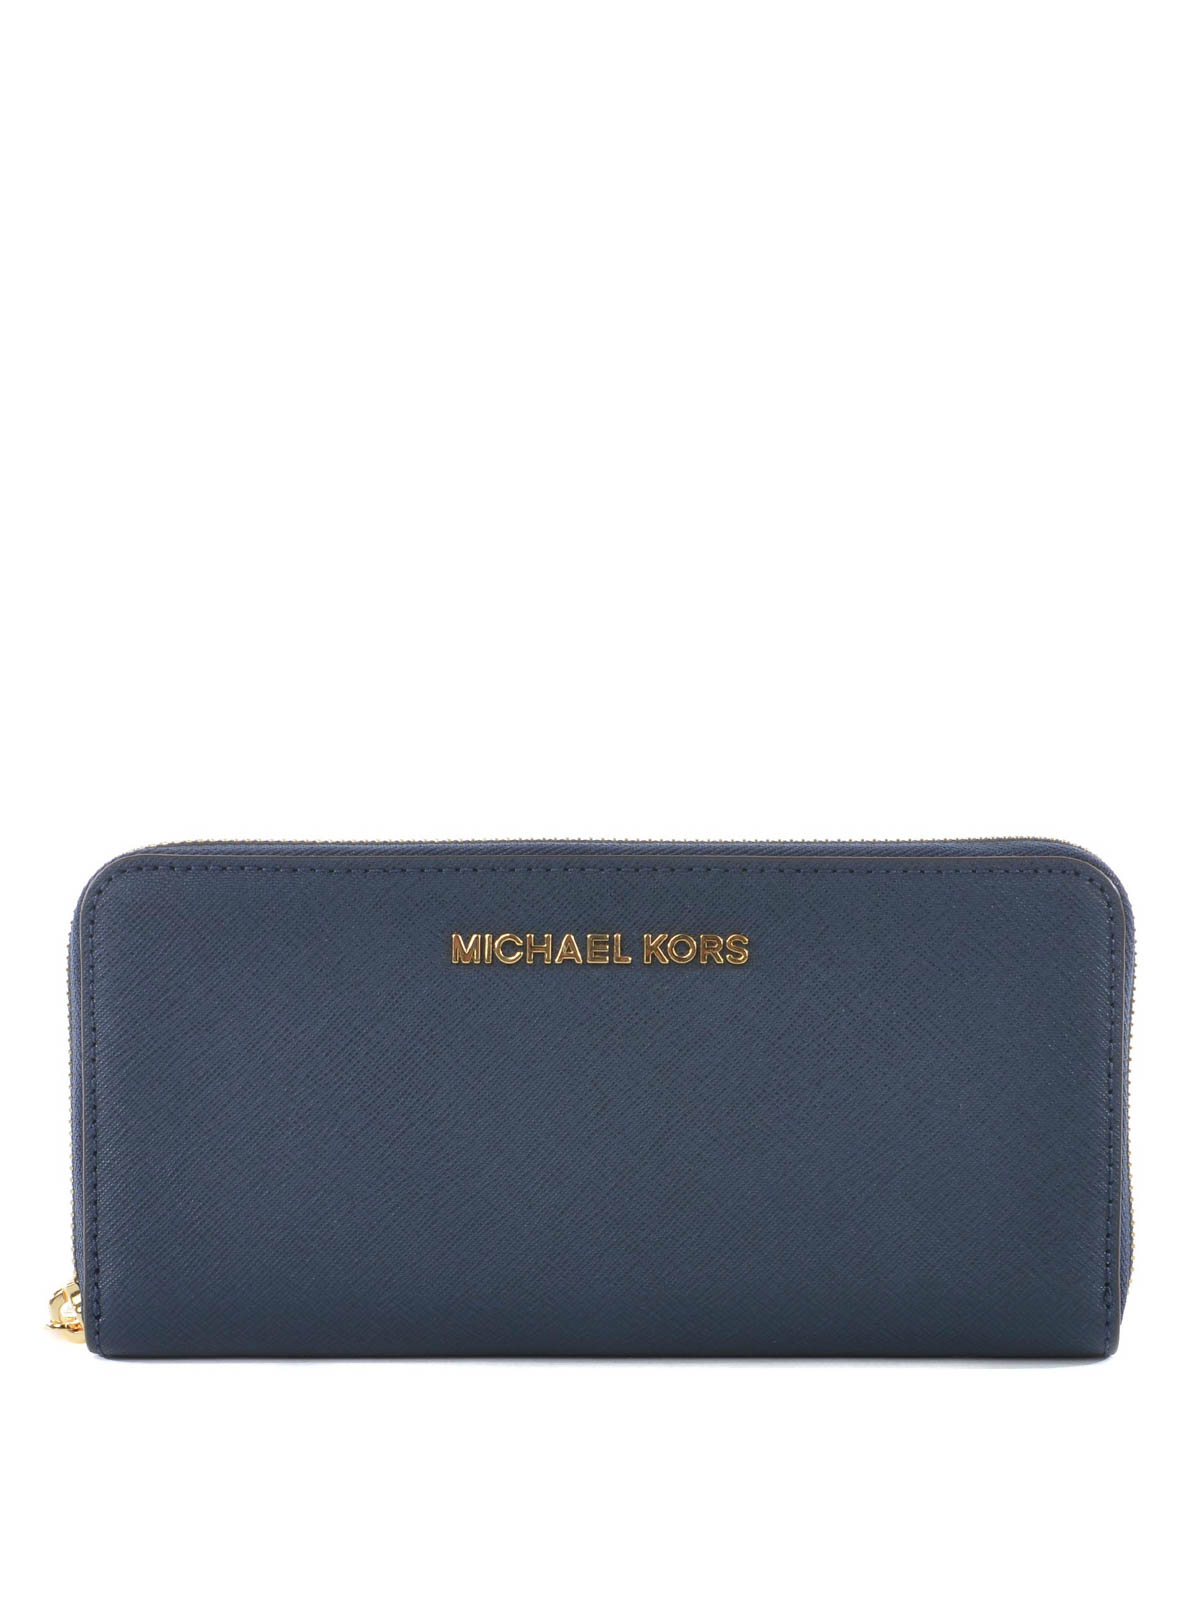 Wallets & purses Michael Kors - Saffiano leather Jet Set wallet -  32S3GTVE3L406